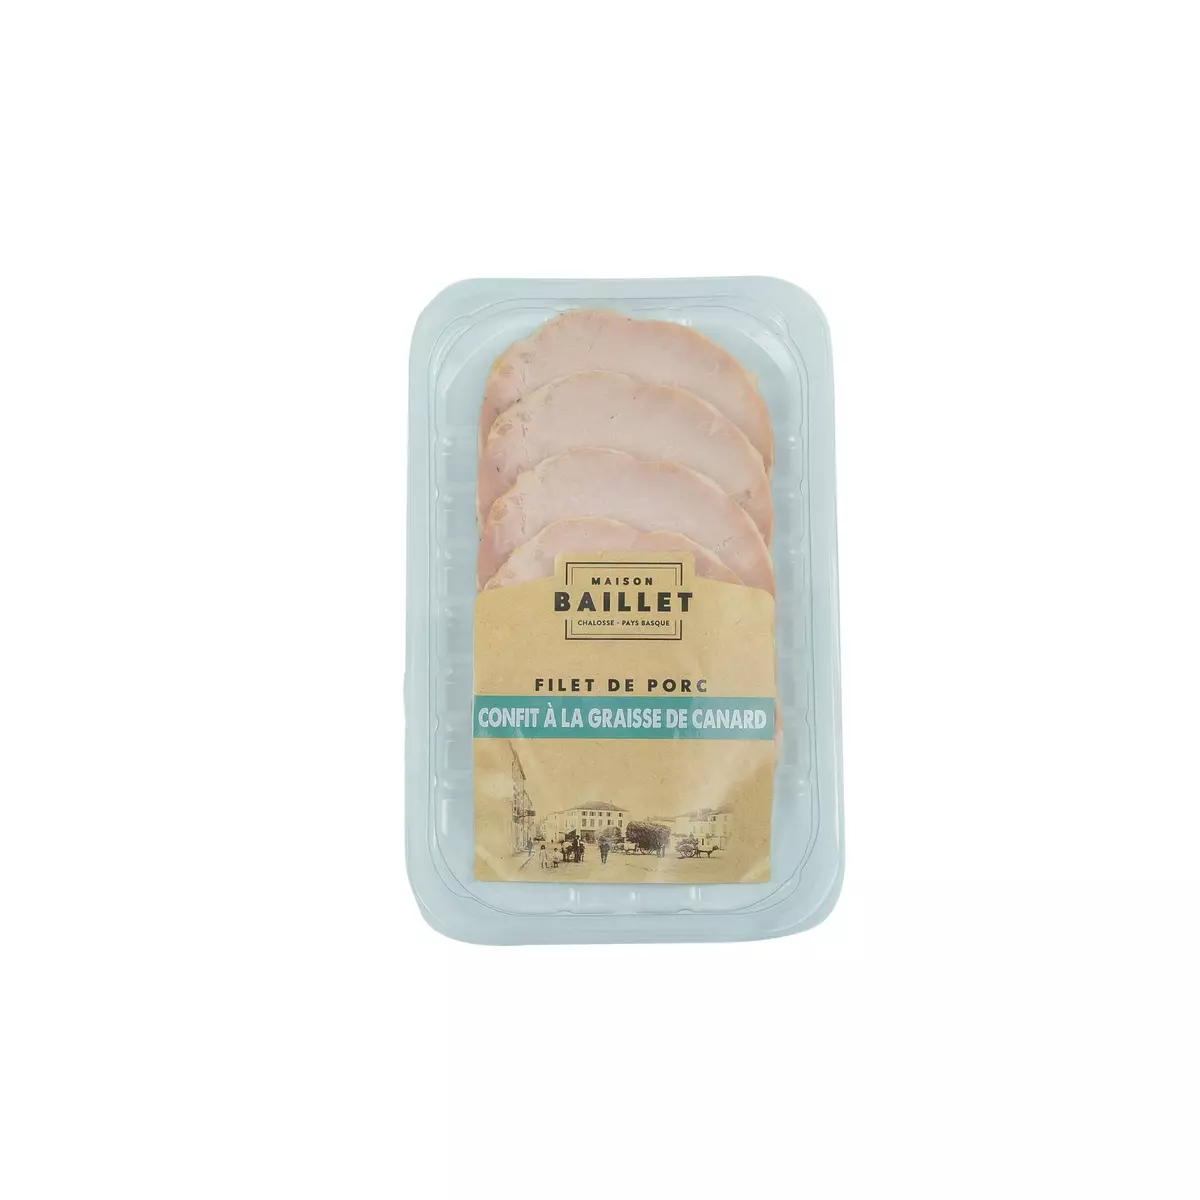 BAILLET Filet de porc confit à la graisse de canard 190g